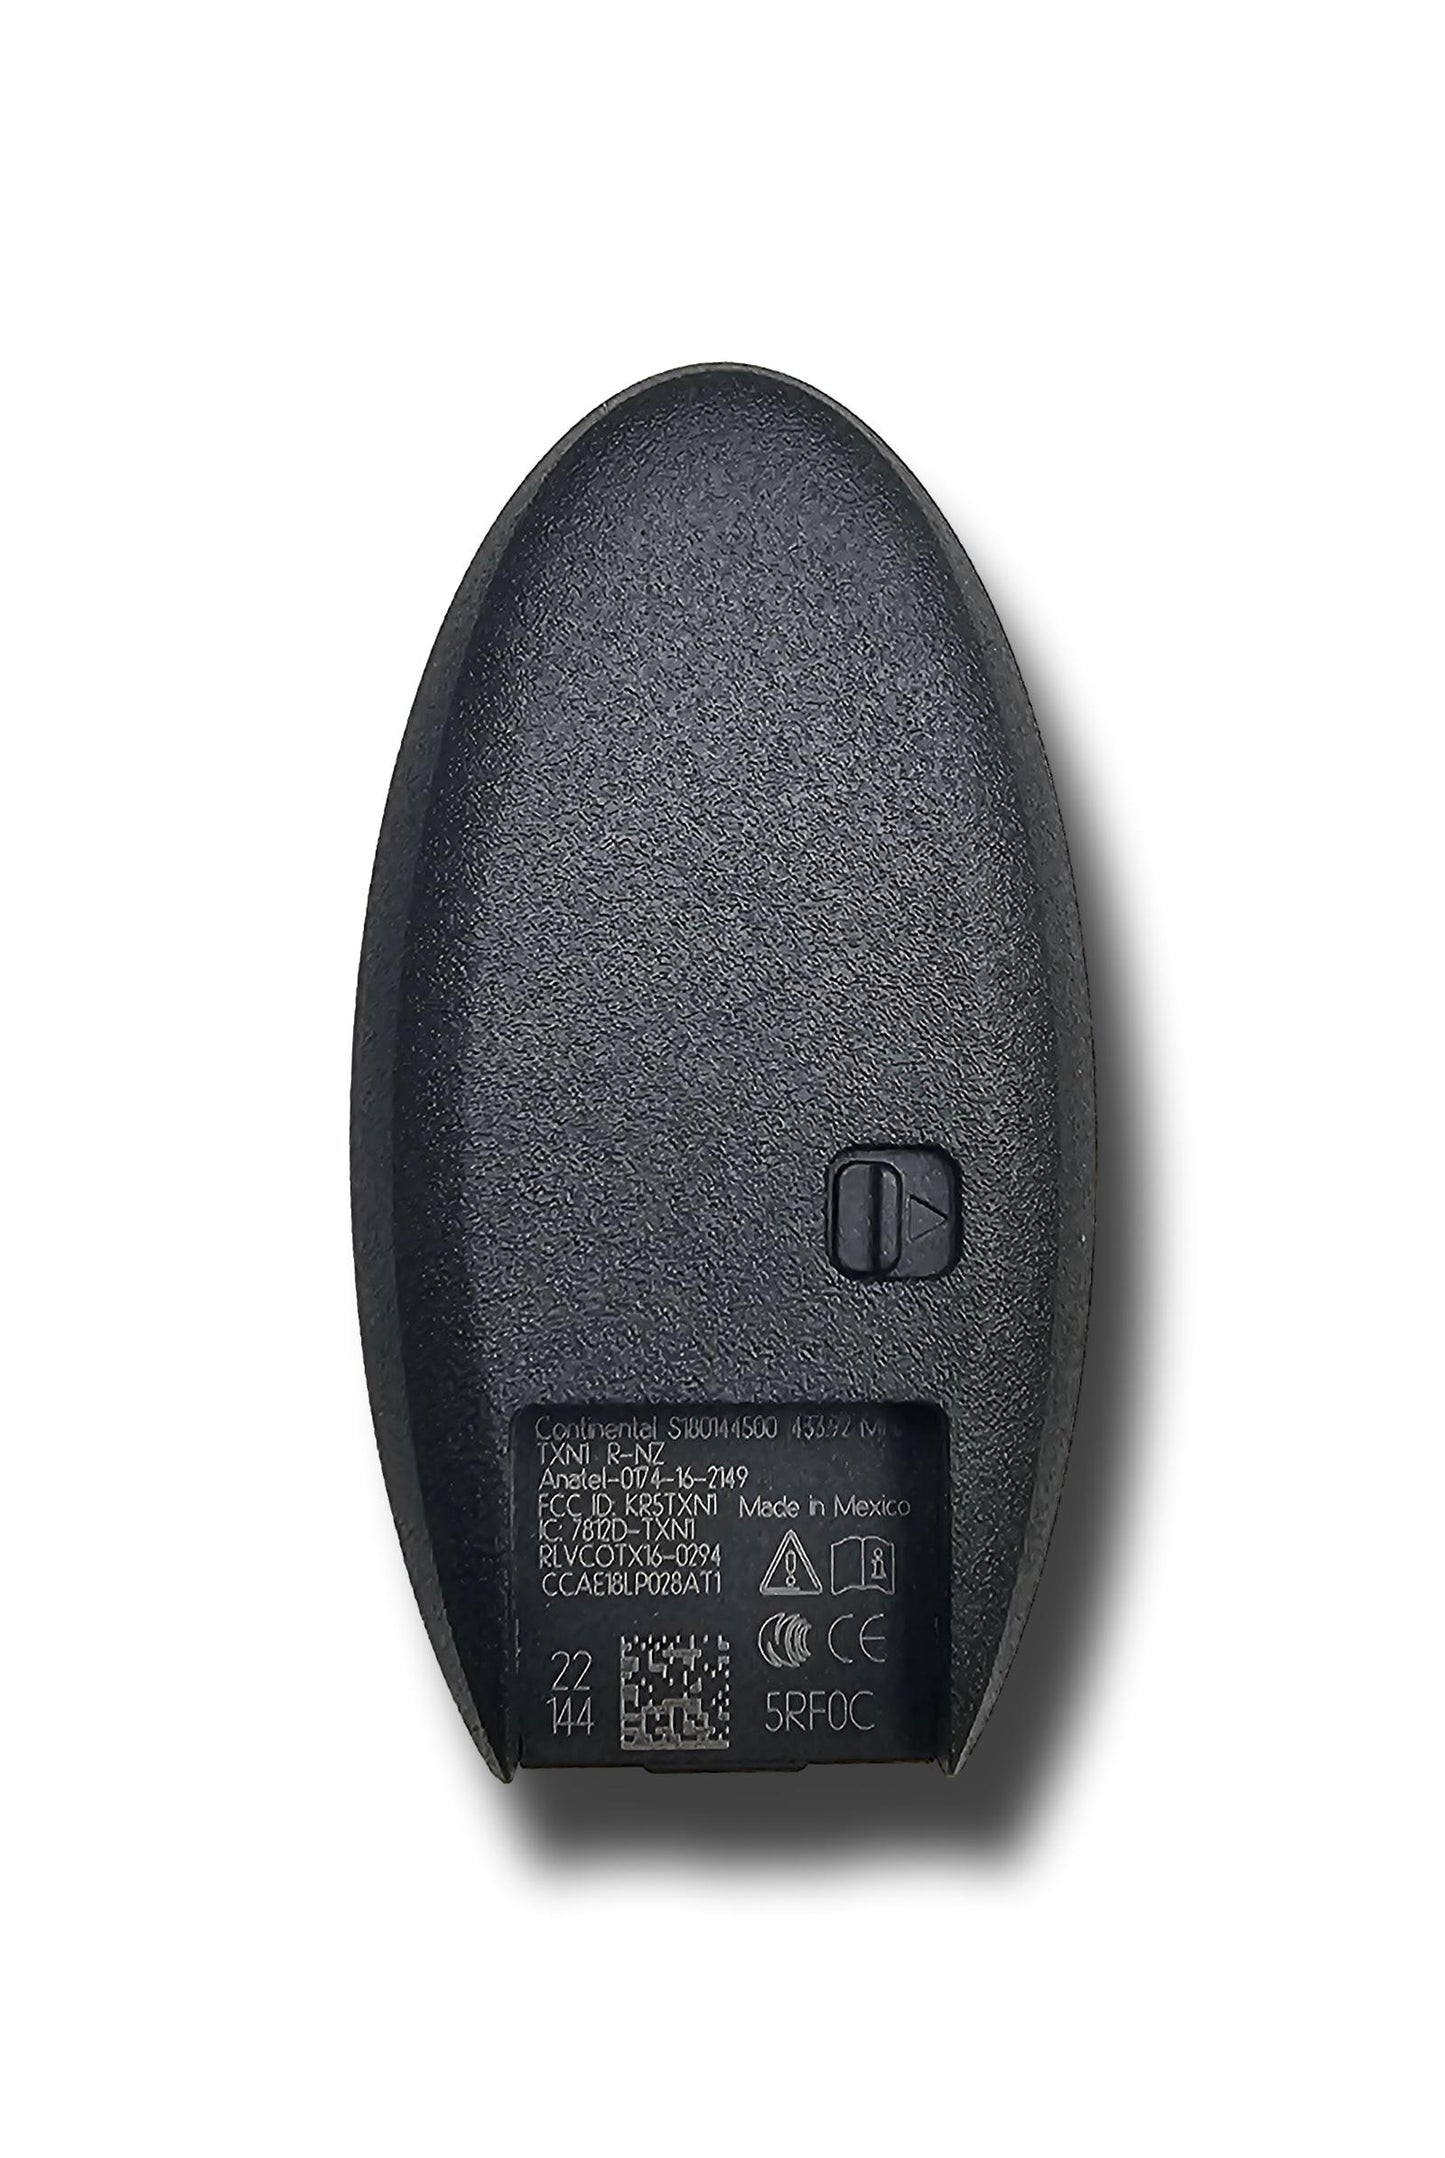 Echte neue Nissan Remote Keyless Remote -Eintrag 285E35RF0C